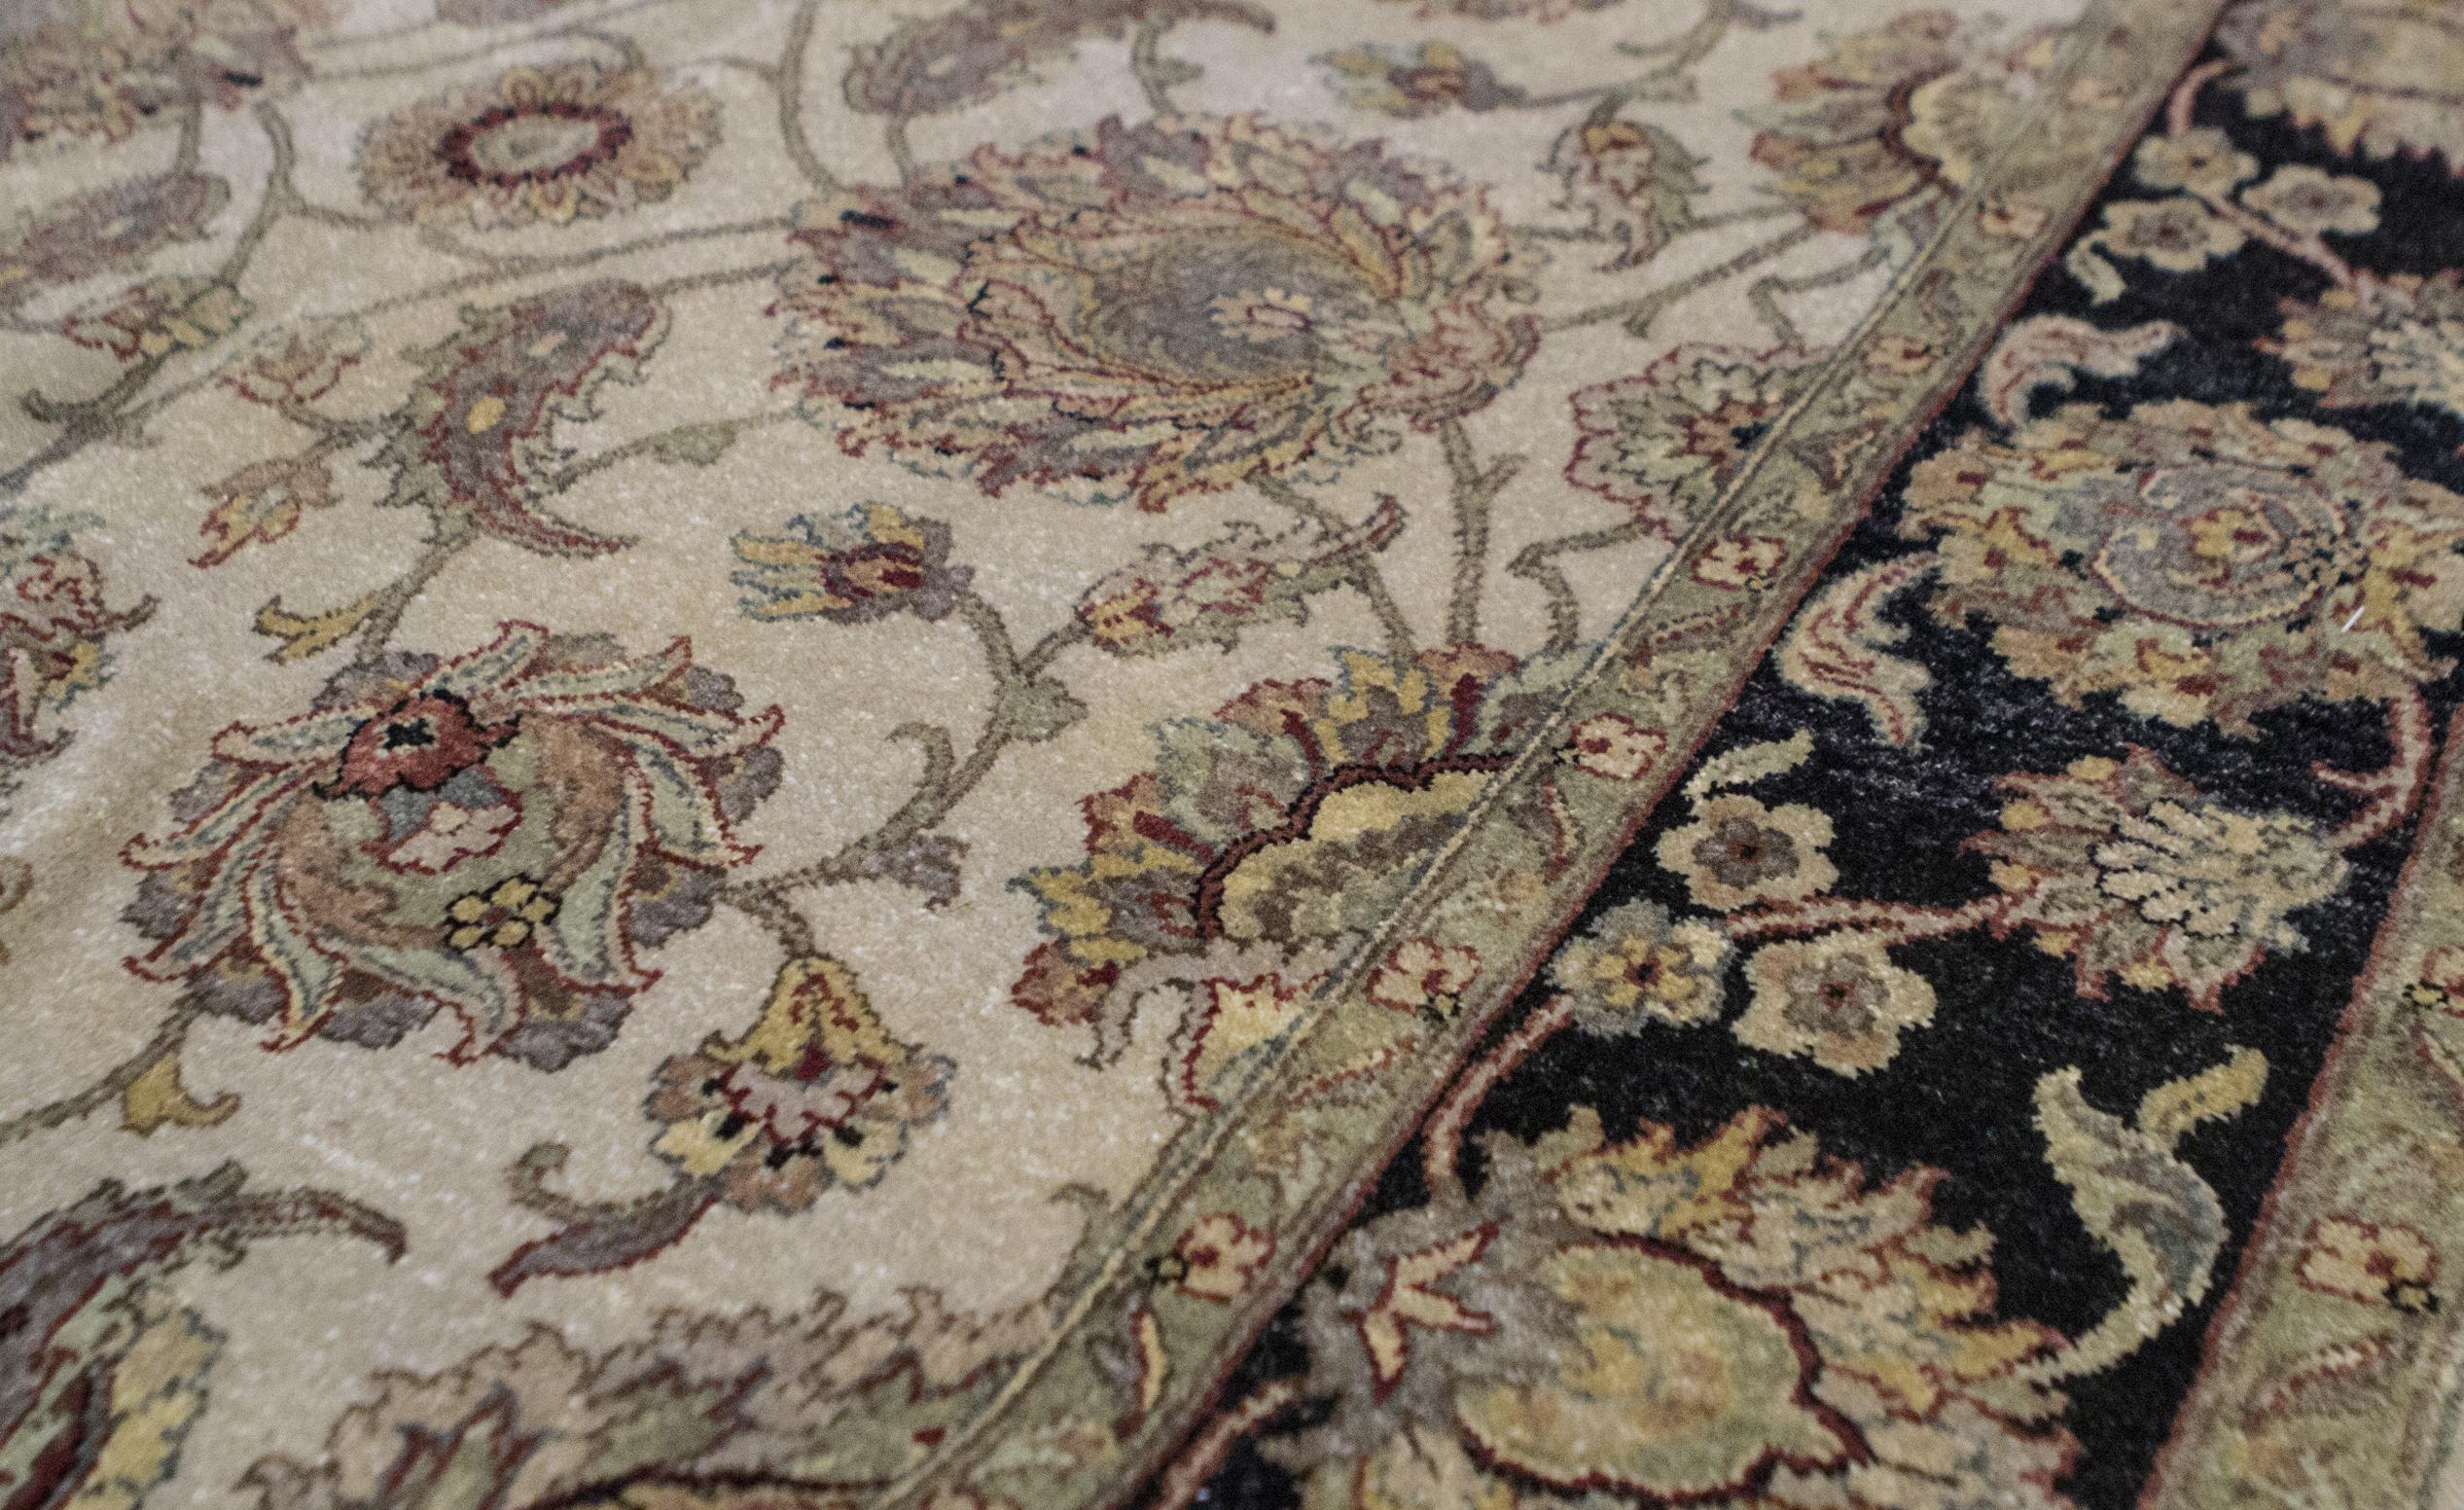 Une introduction aux maîtres du tissage de tapis en Inde. Ces dessins reprennent les motifs d'Agra de la période orientale moghole. Ce qui distingue ces motifs Agra tissés à la main, ce sont les grandes palmettes florales. La nouveauté de cette